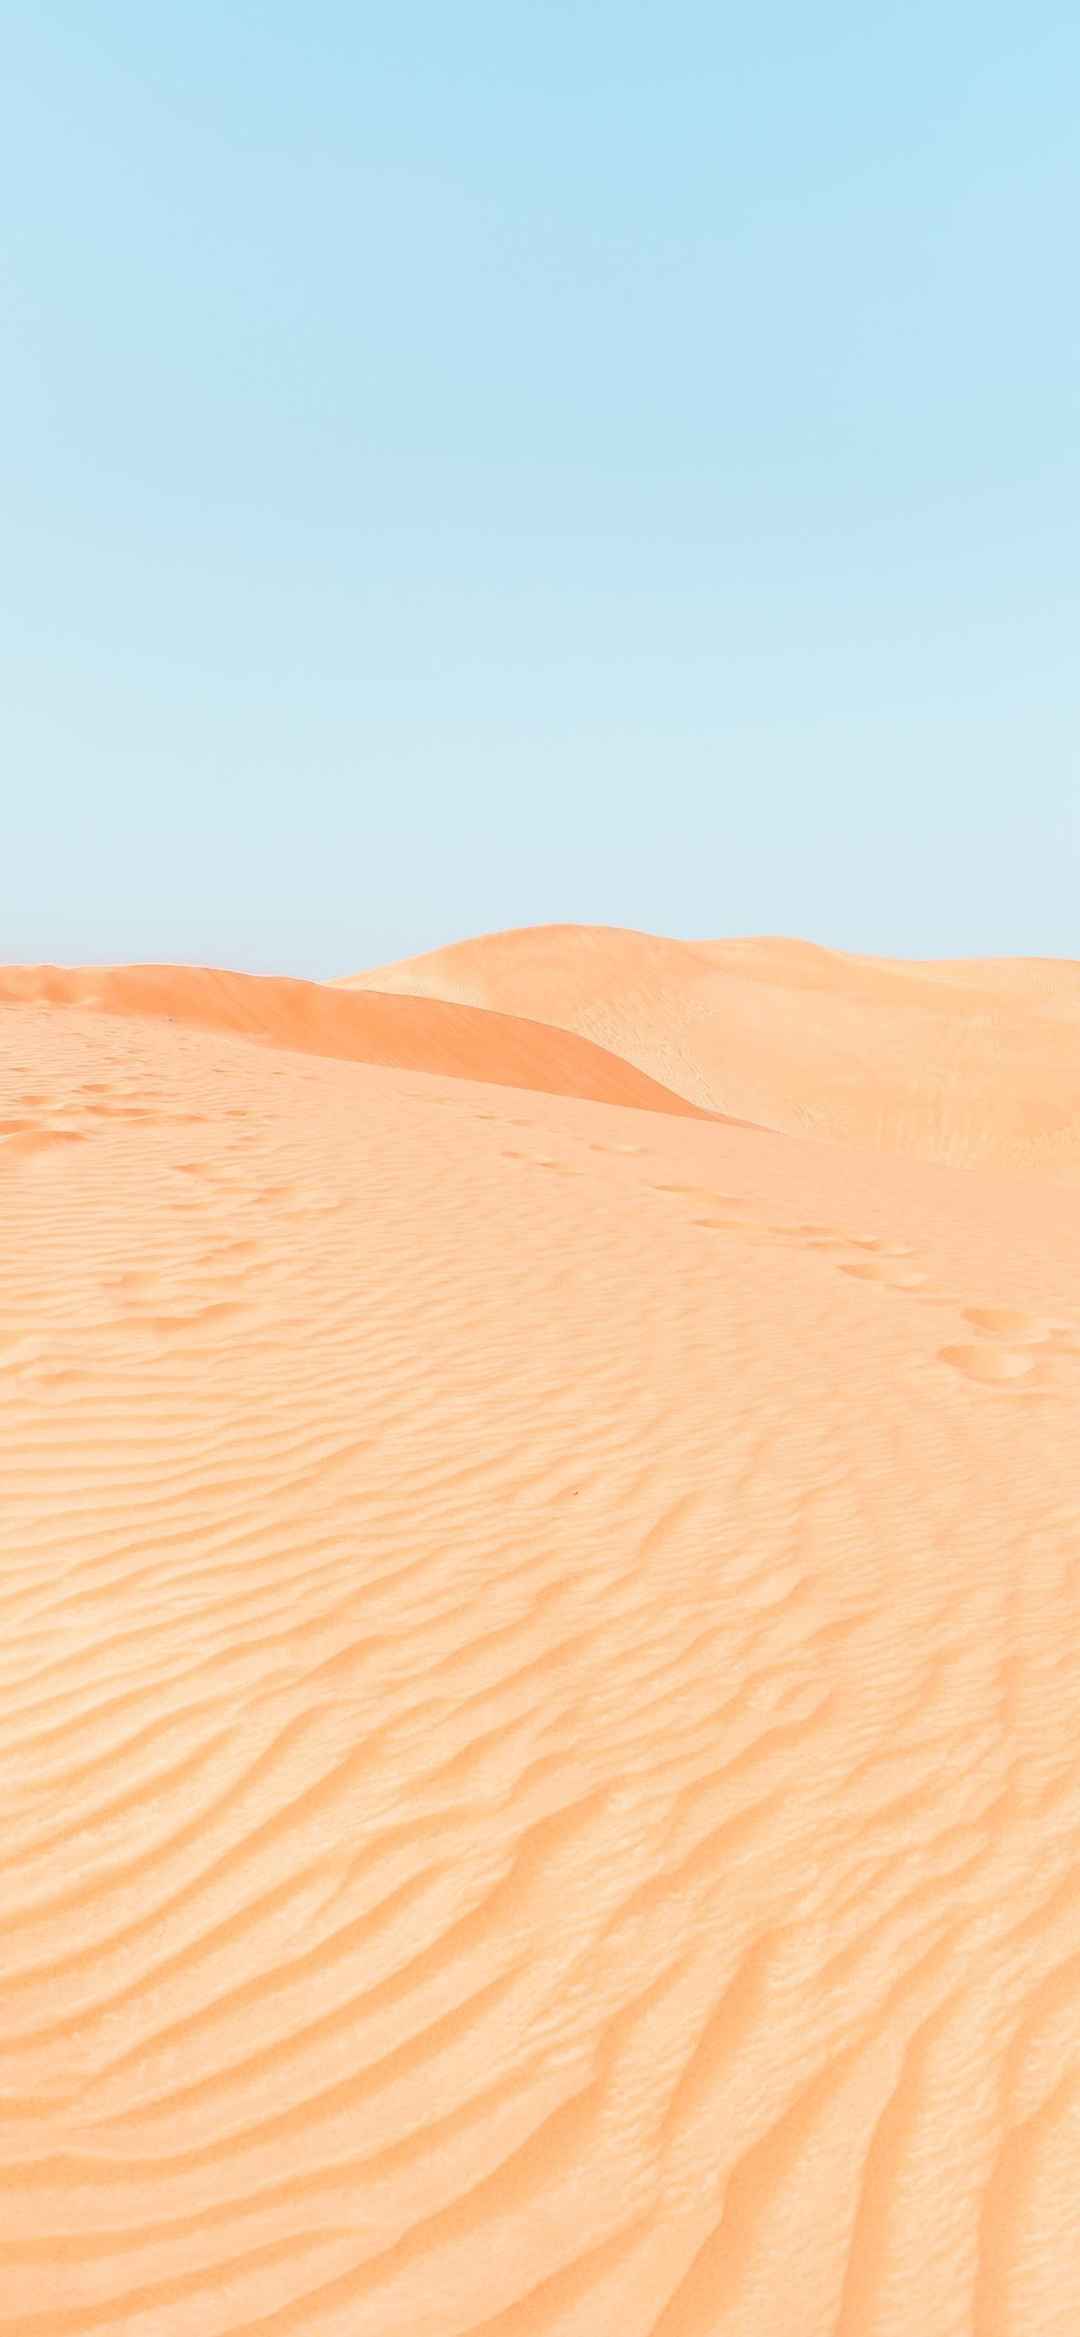 沙漠风景图片手机壁纸